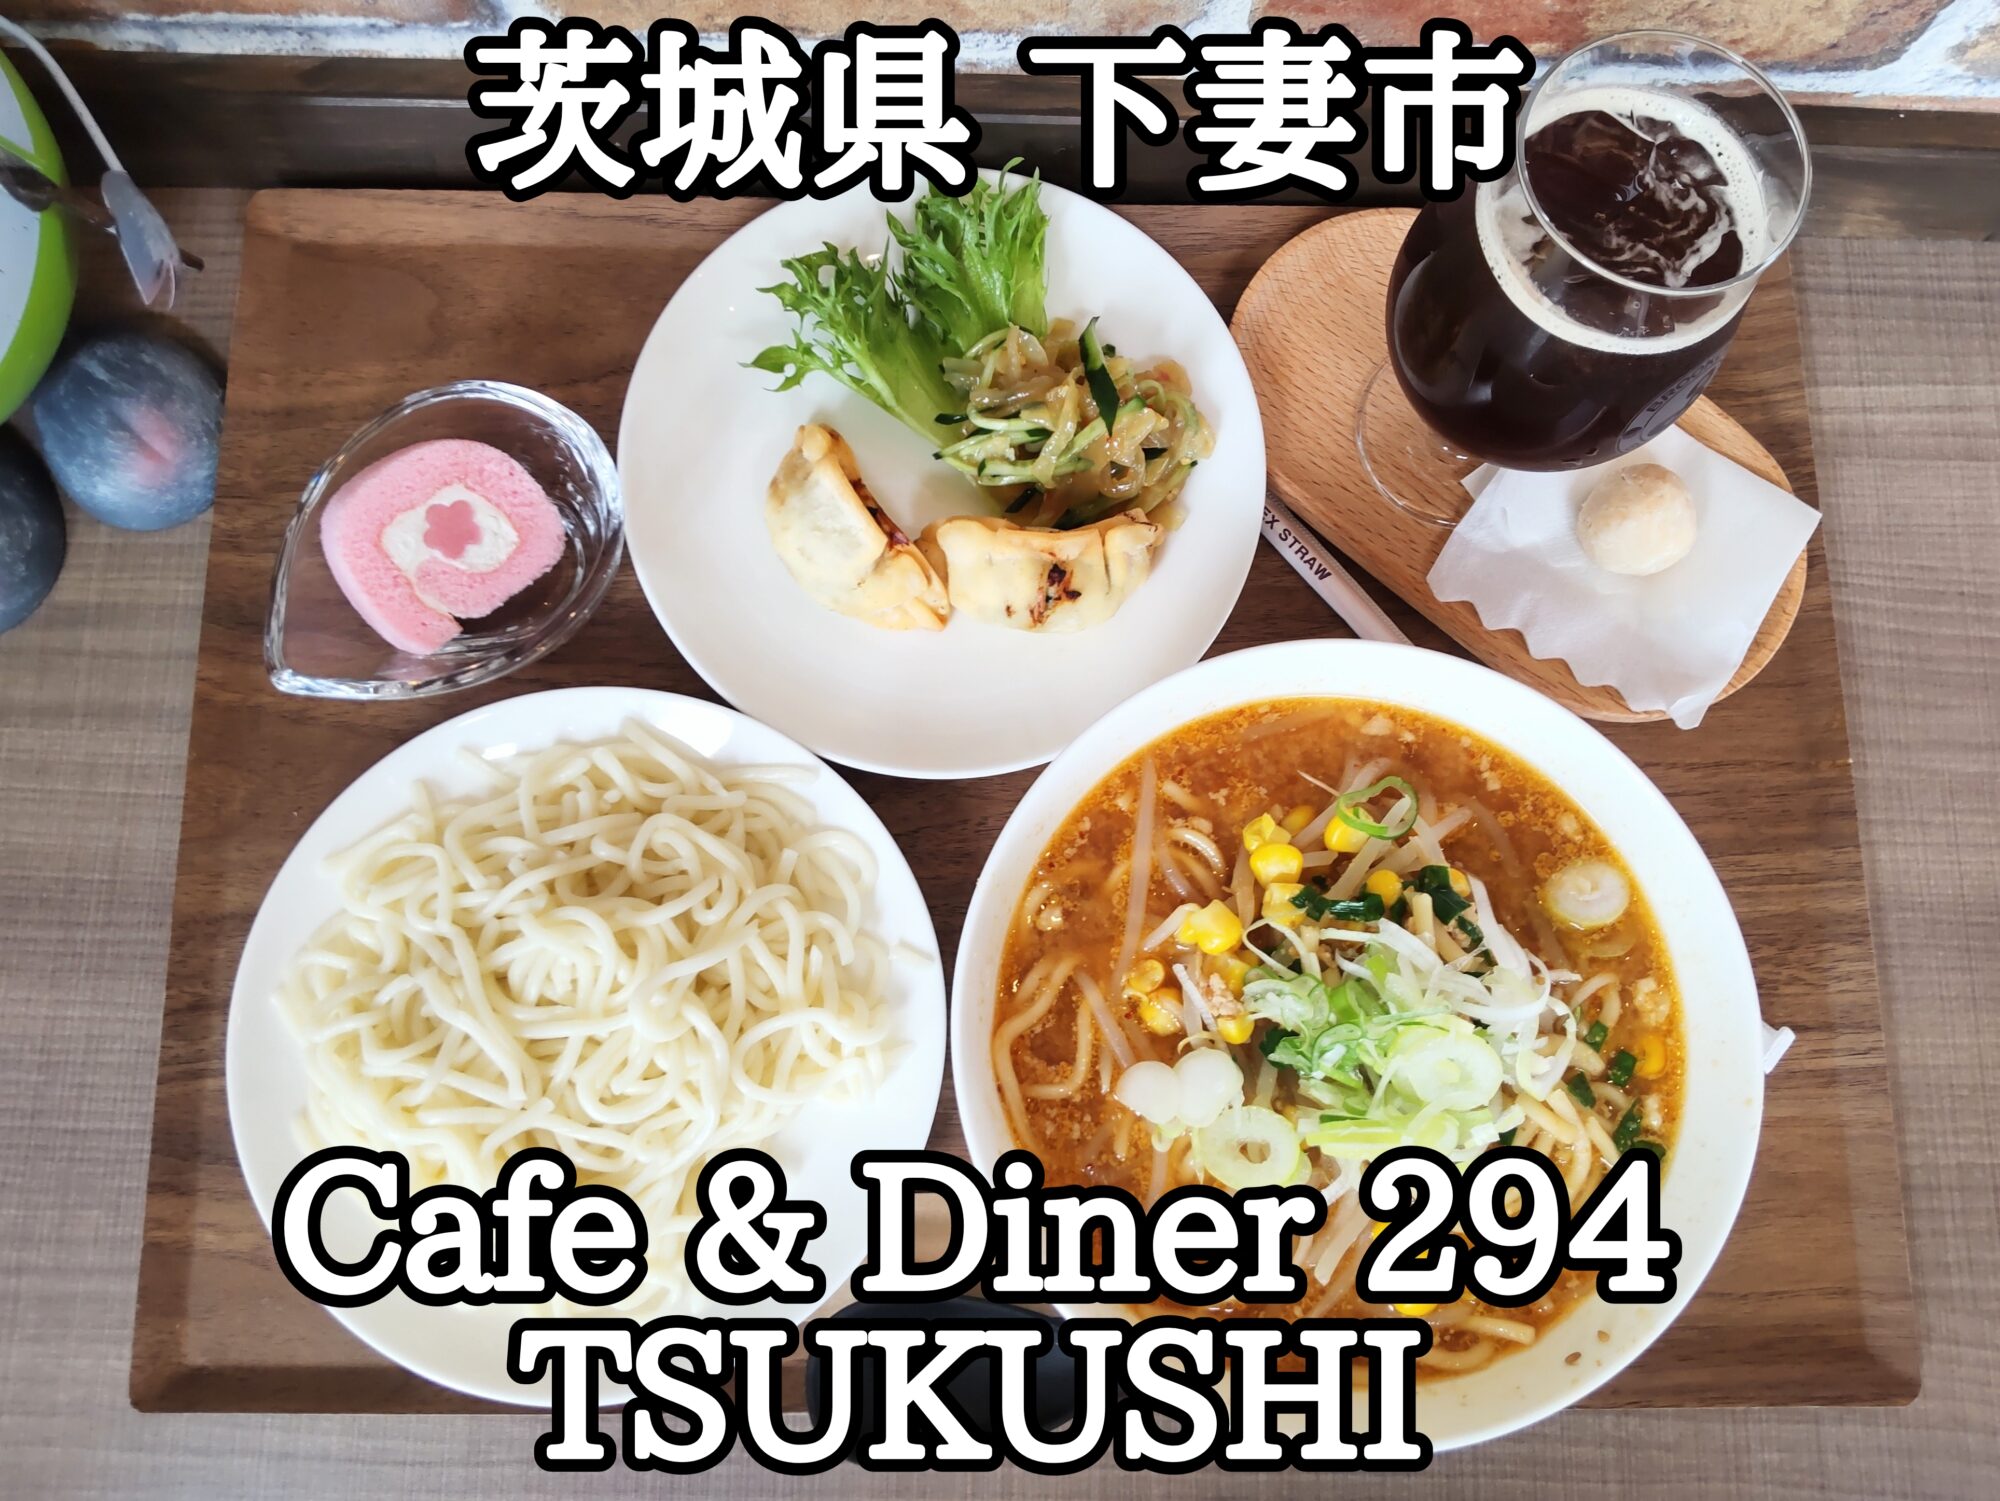 【茨城県】【下妻市】「Cafe & Diner 294 TSUKUSHI」国道294号線沿いAEON下妻店近くにオープンした元給食のおばちゃん達が作るお店